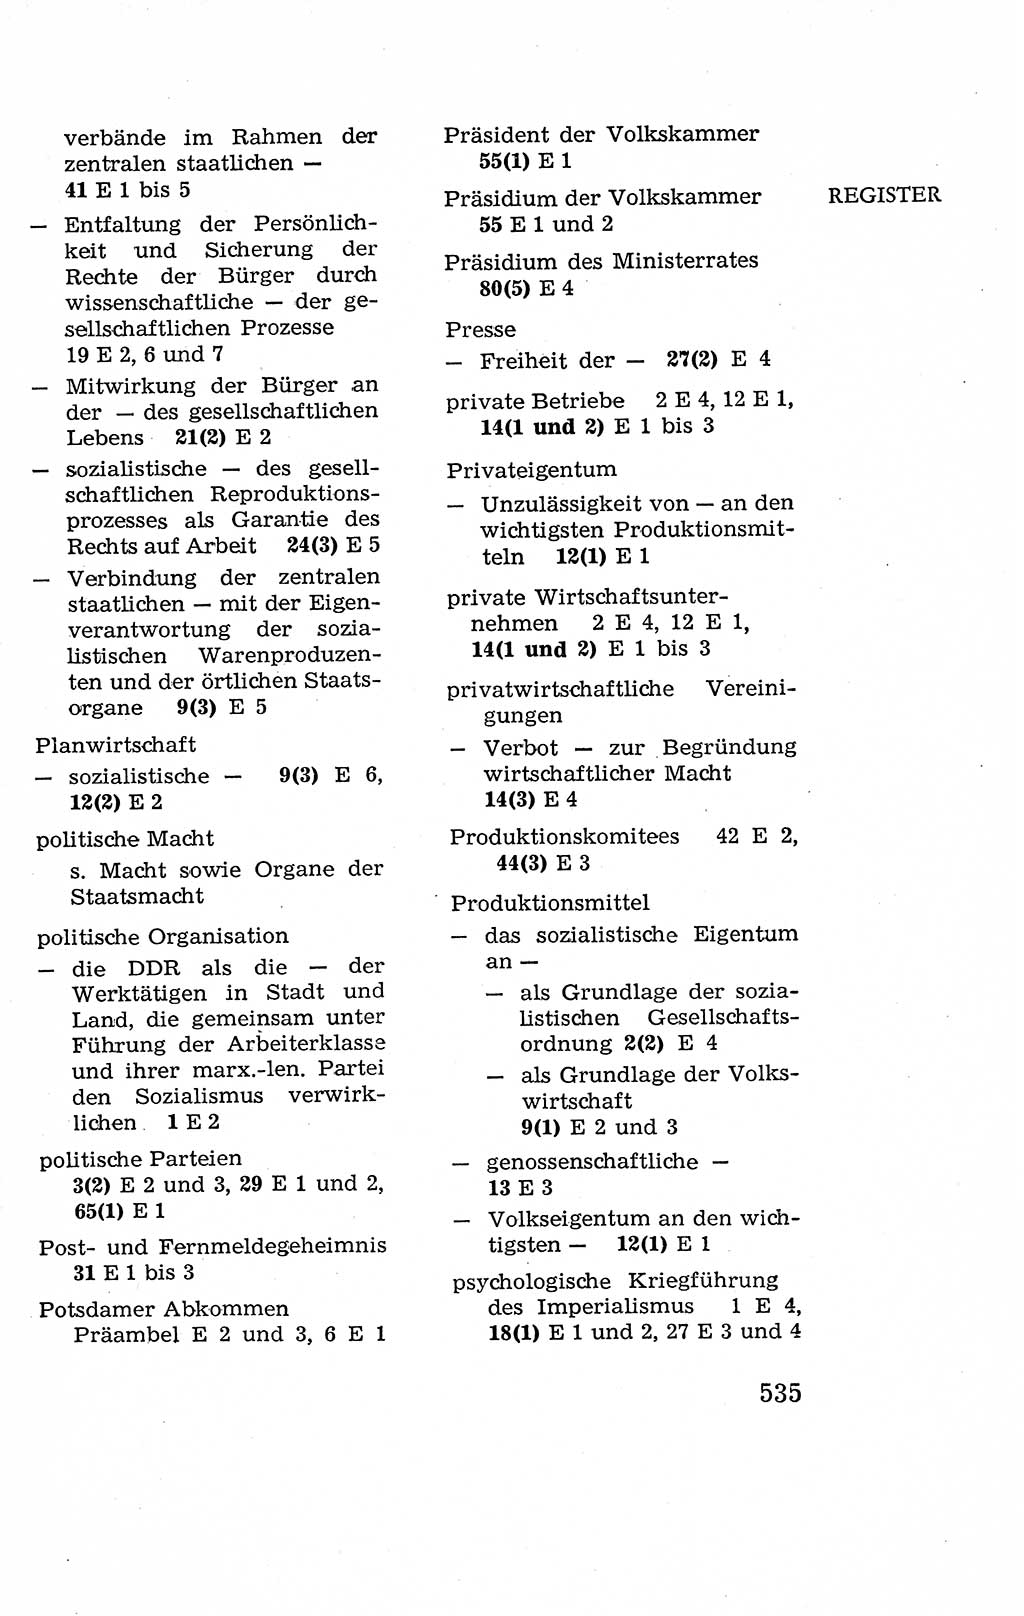 Verfassung der Deutschen Demokratischen Republik (DDR), Dokumente, Kommentar 1969, Band 2, Seite 535 (Verf. DDR Dok. Komm. 1969, Bd. 2, S. 535)